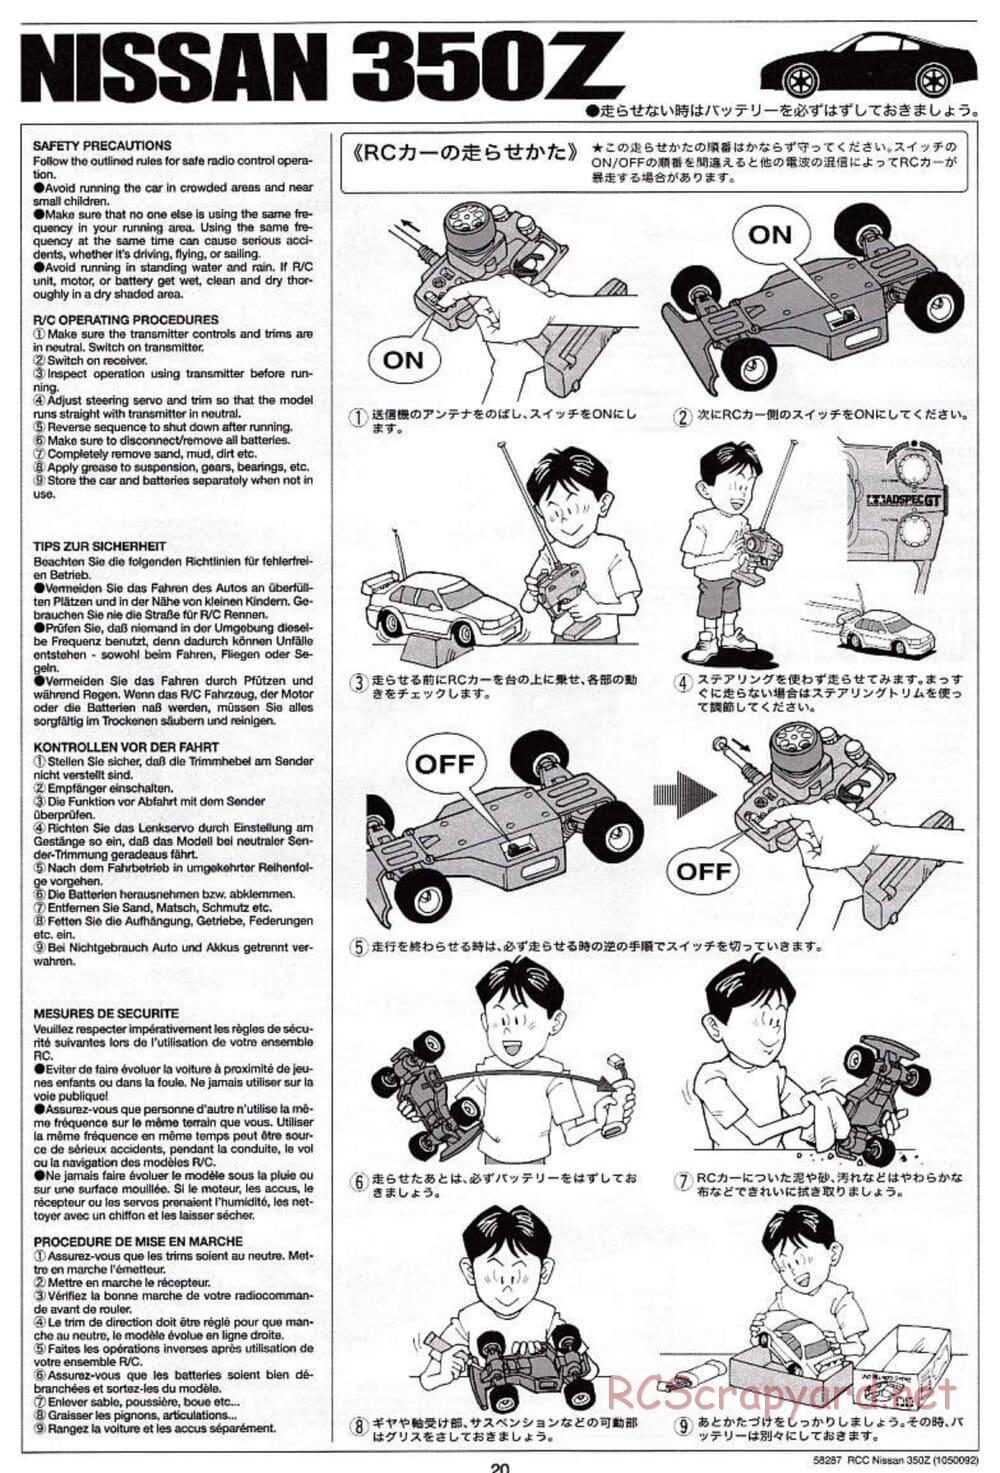 Tamiya - Nissan 350Z - TL-01 Chassis - Manual - Page 20